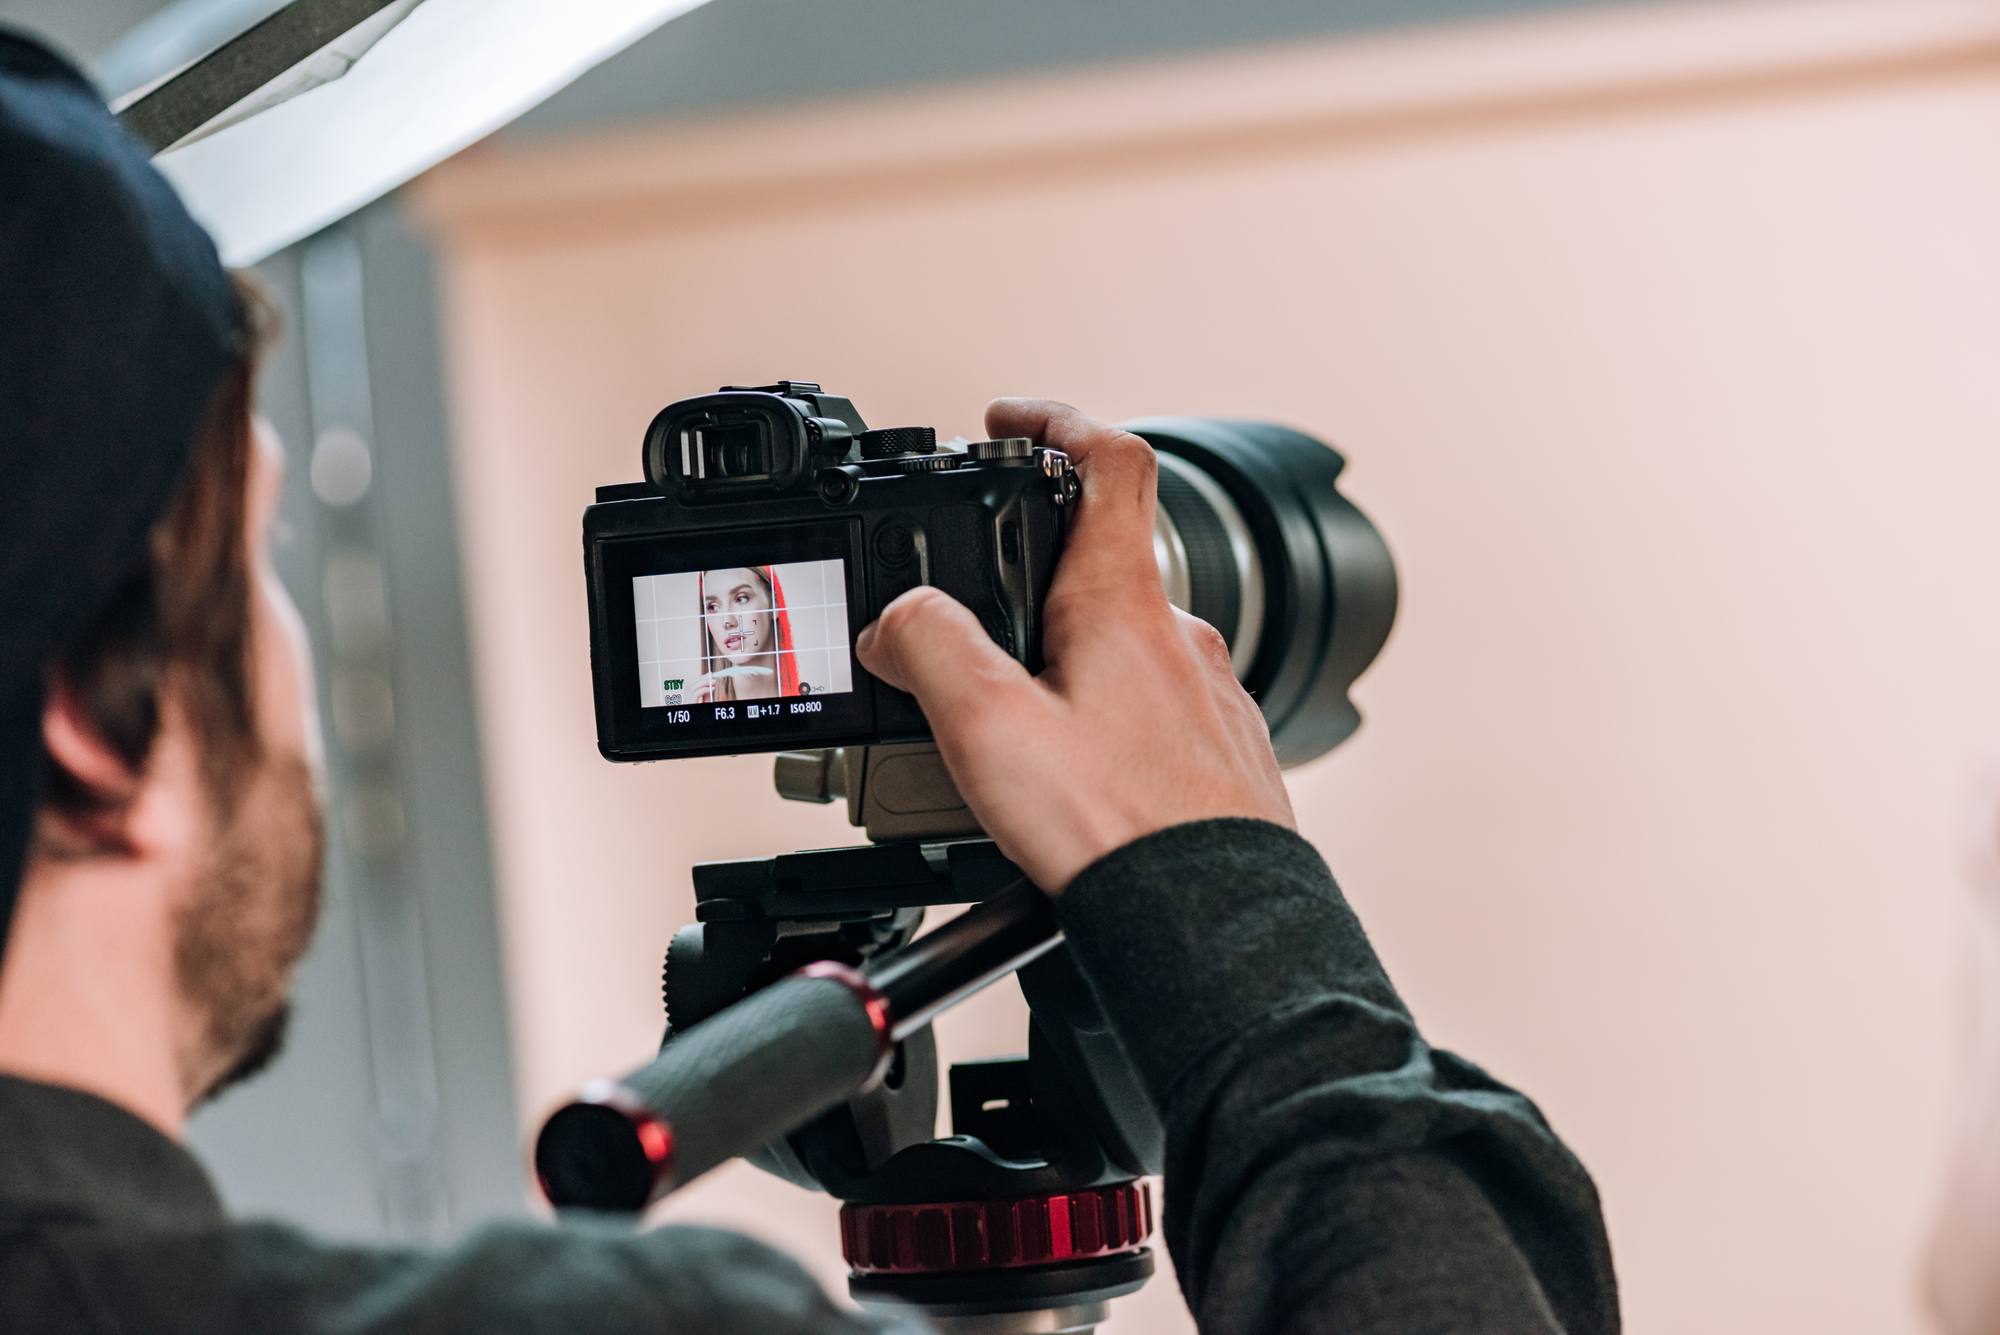 Close-up van een cameraman die een video-opname maakt. Op het display van de camera is een vrouw te zien met een rode sjaal, scherp in beeld gebracht. De cameraman draagt een donker kledingstuk en een pet, terwijl hij de camera vasthoudt en de focus aanpast. De achtergrond is neutraal en licht van kleur.